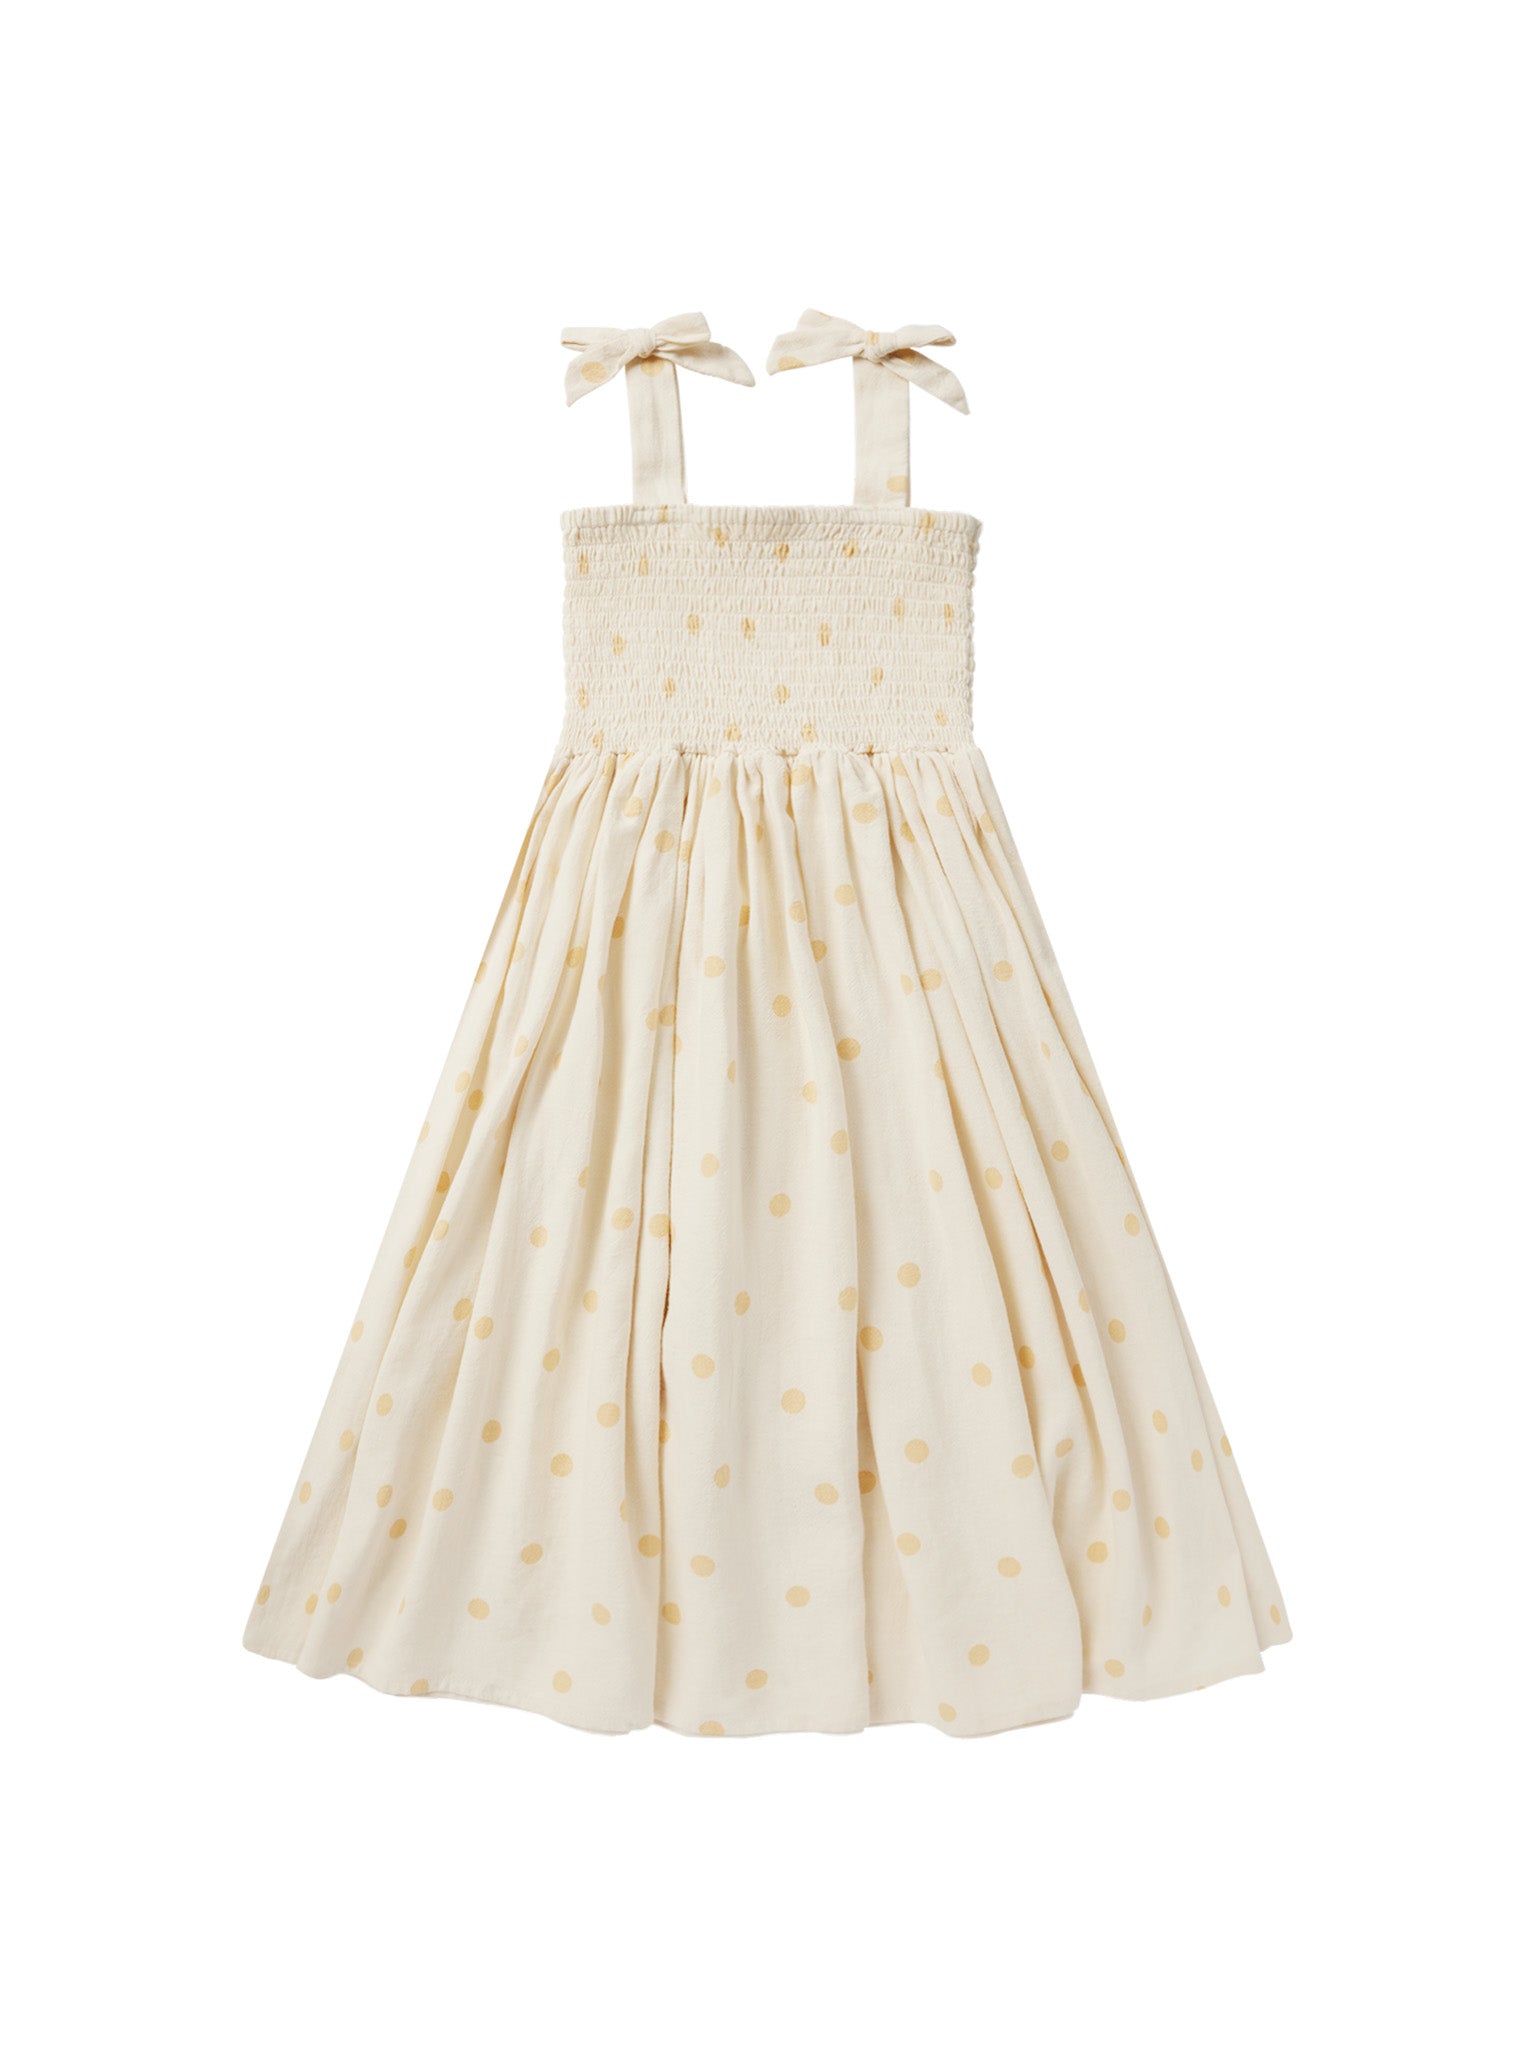 Ivy Dress - Yellow Polka Dot - Twinkle Twinkle Little One